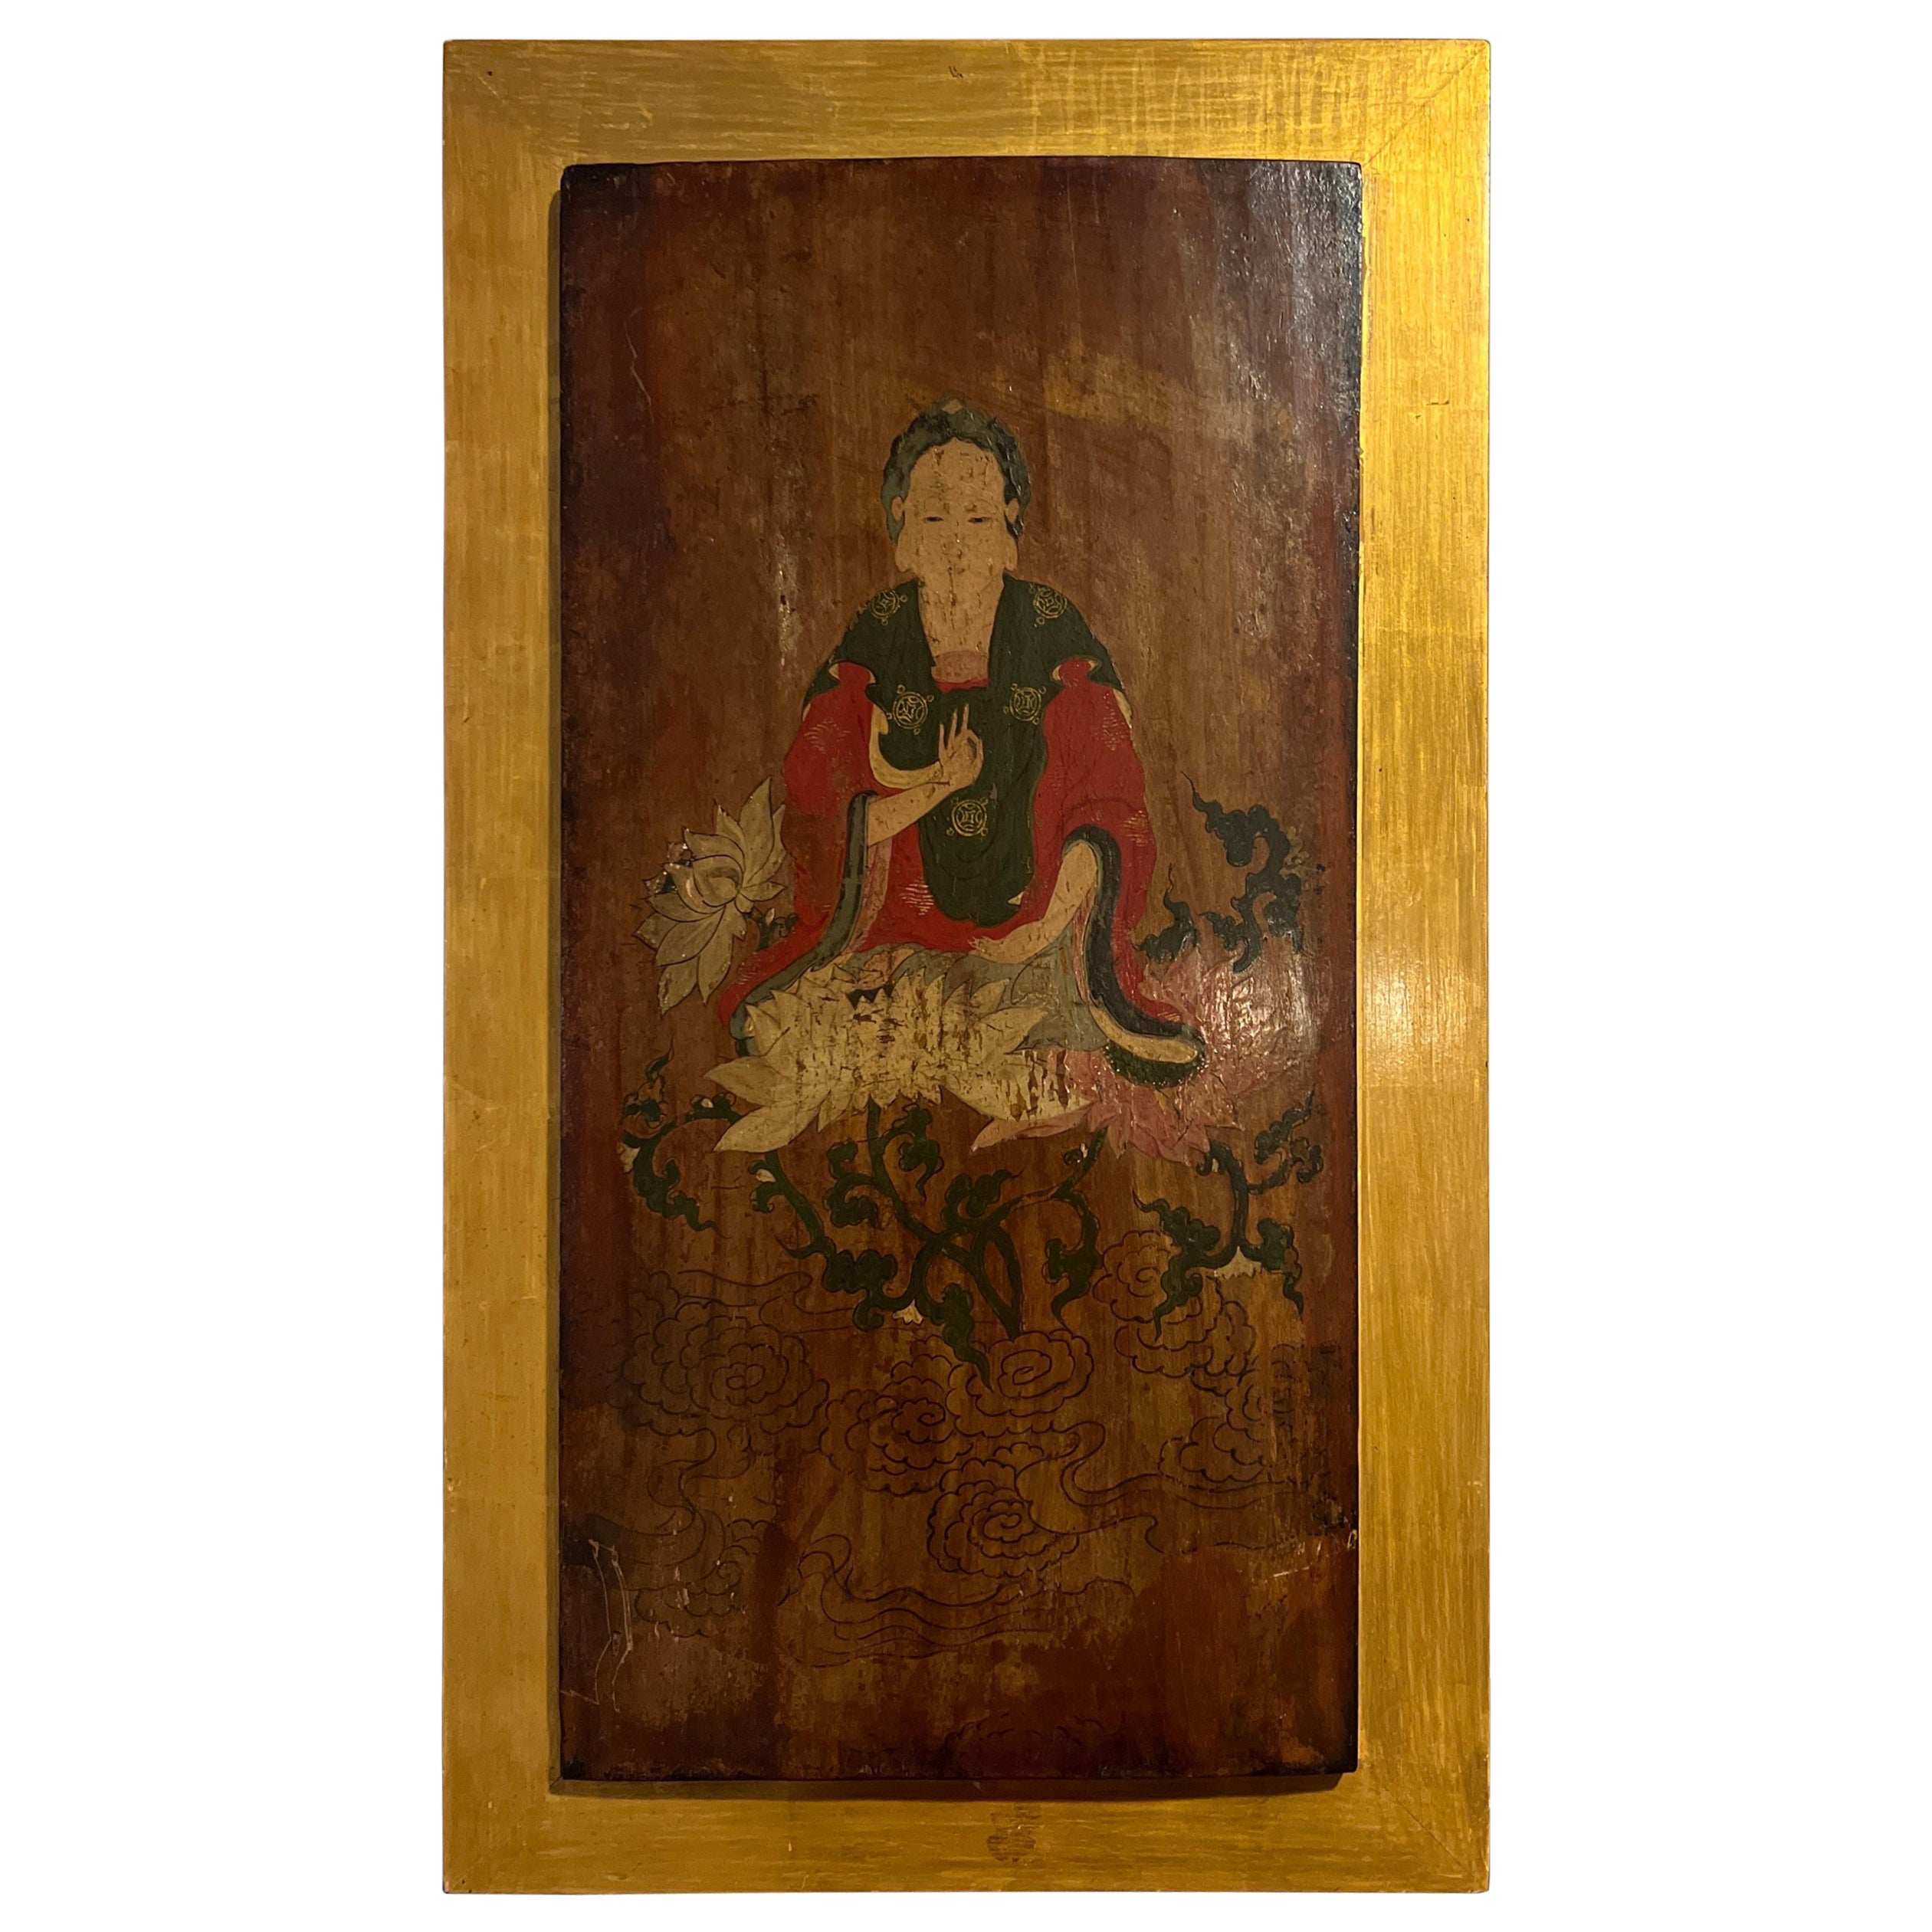 Panneau en bois laqué peint de style bouddhiste, datant du XIXe siècle ou plus ancien en vente